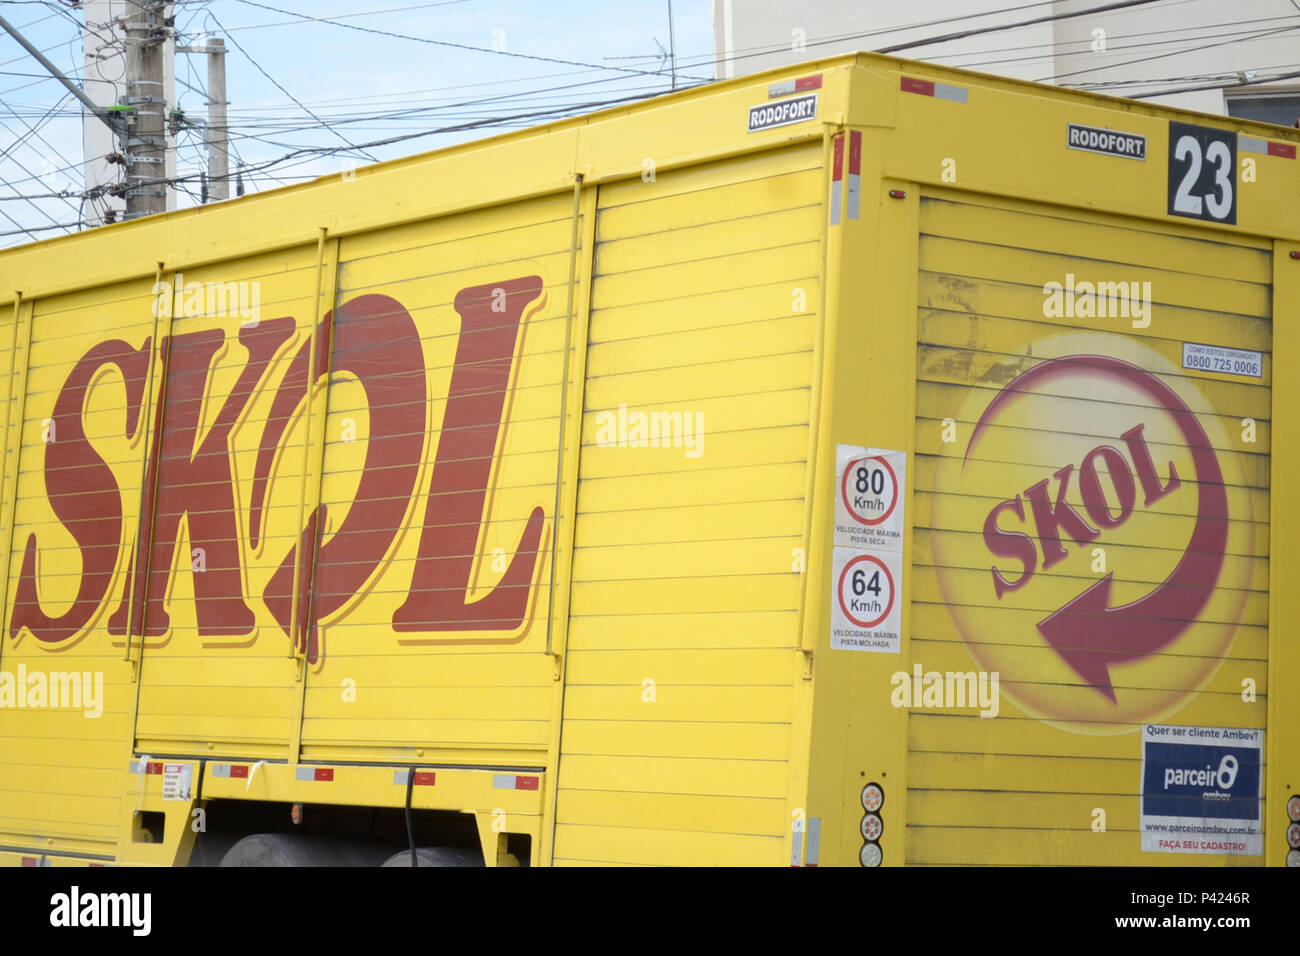 Caminhão da cerveja Skol estacionado. Foto Stock